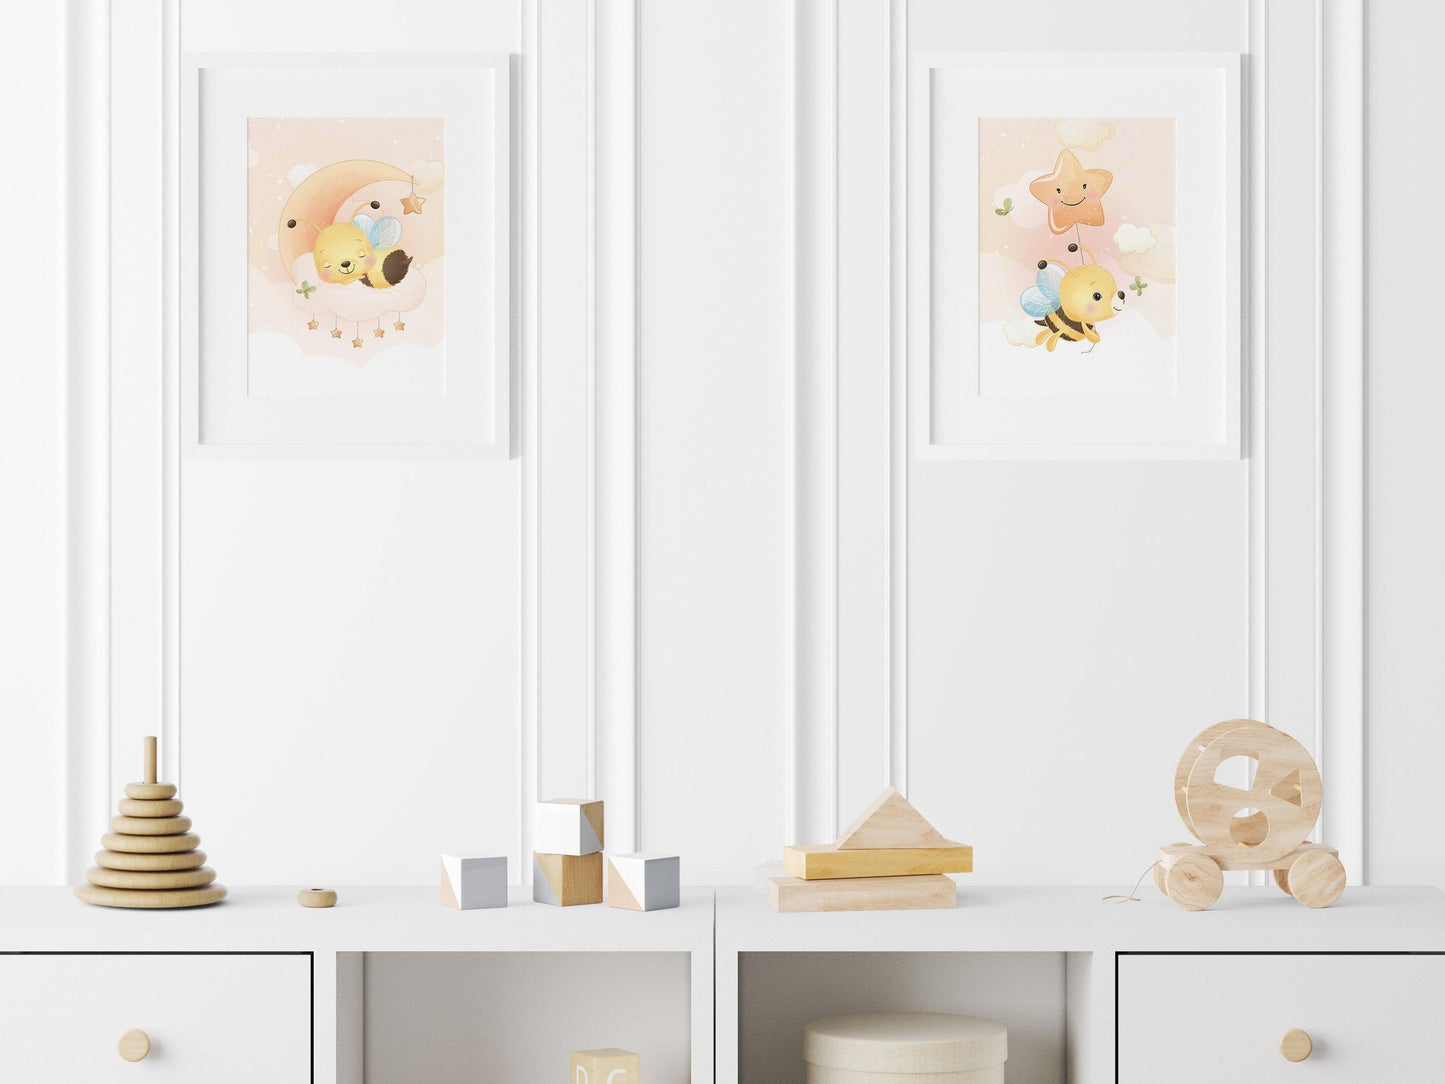 Affiches Abeille mignonne illustration - chambre enfant bébé - Décoration fille - Idée cadeau Naissance - Thème animaux - bee cute - A4 A3 - Imagine.affiche